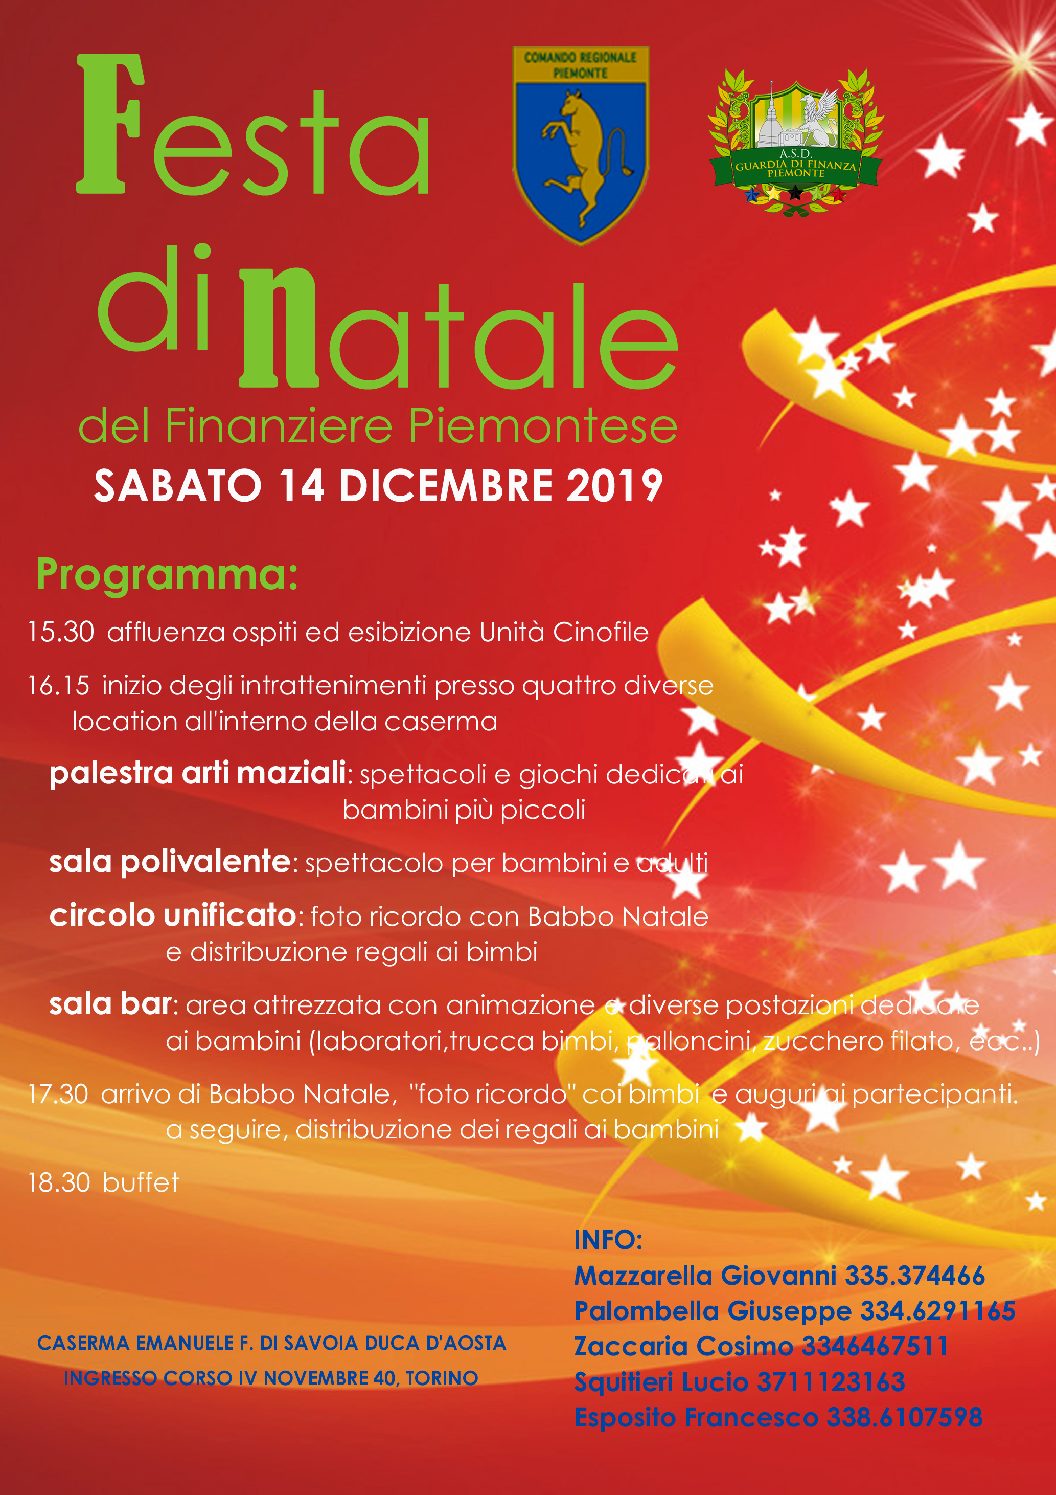 La Festa Del Natale.Festa Di Natale Del Finanziere Piemontese 2019 A S D Guardia Di Finanza Piemonte